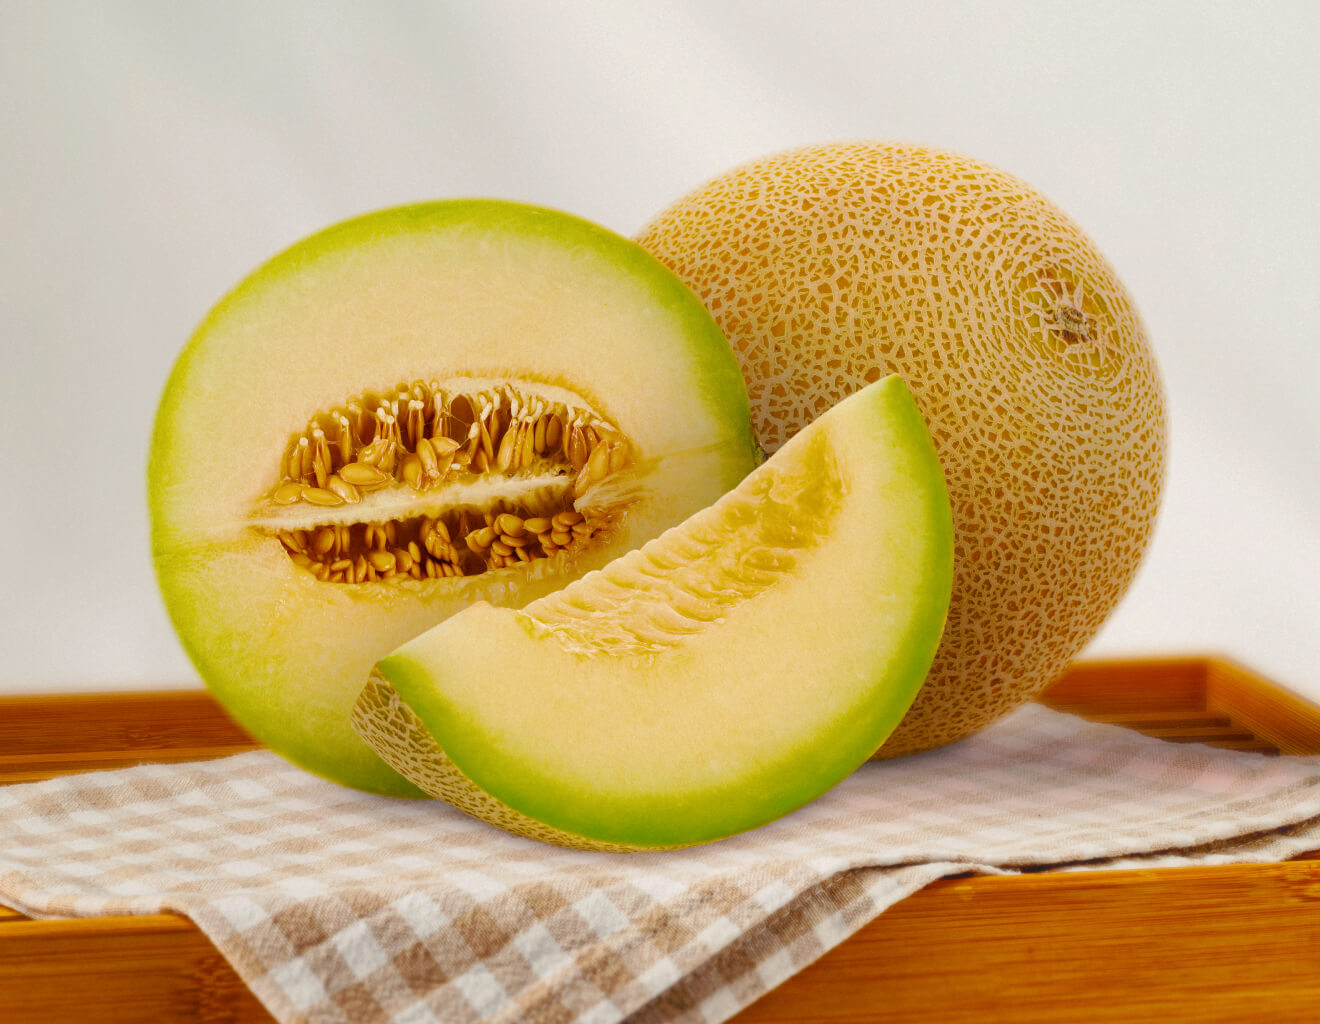 Graciosa's melon